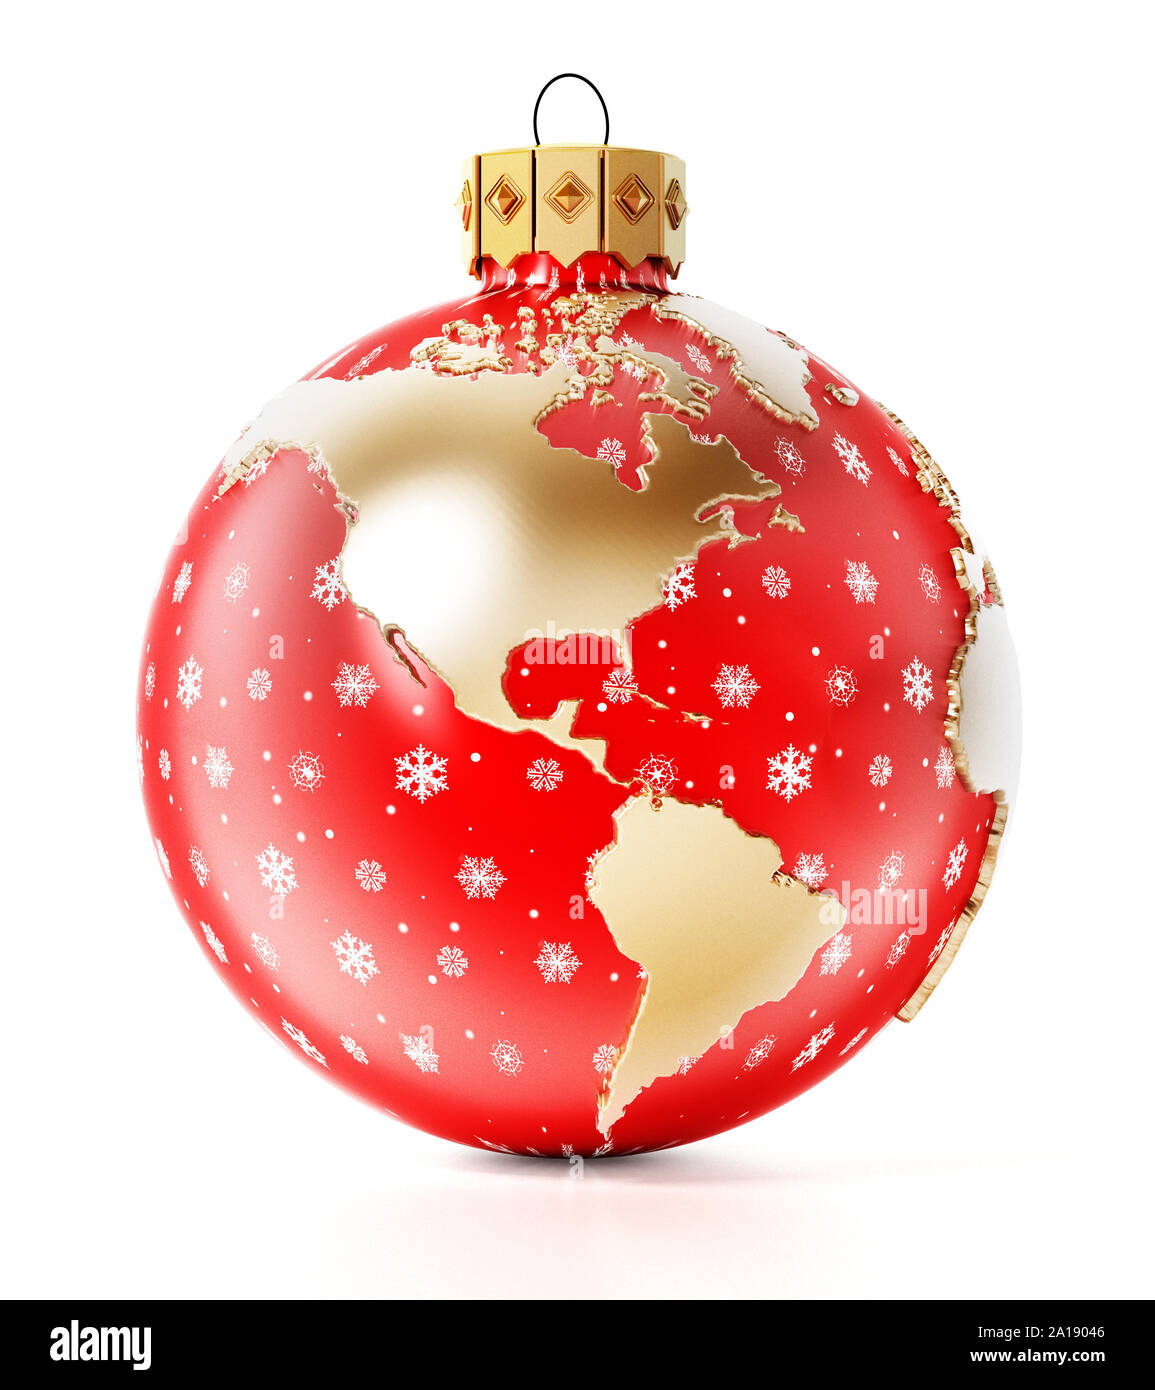 Weihnachtskugel mit Erde Karte auf weißem Hintergrund. 3D-Rendering. Stockfoto